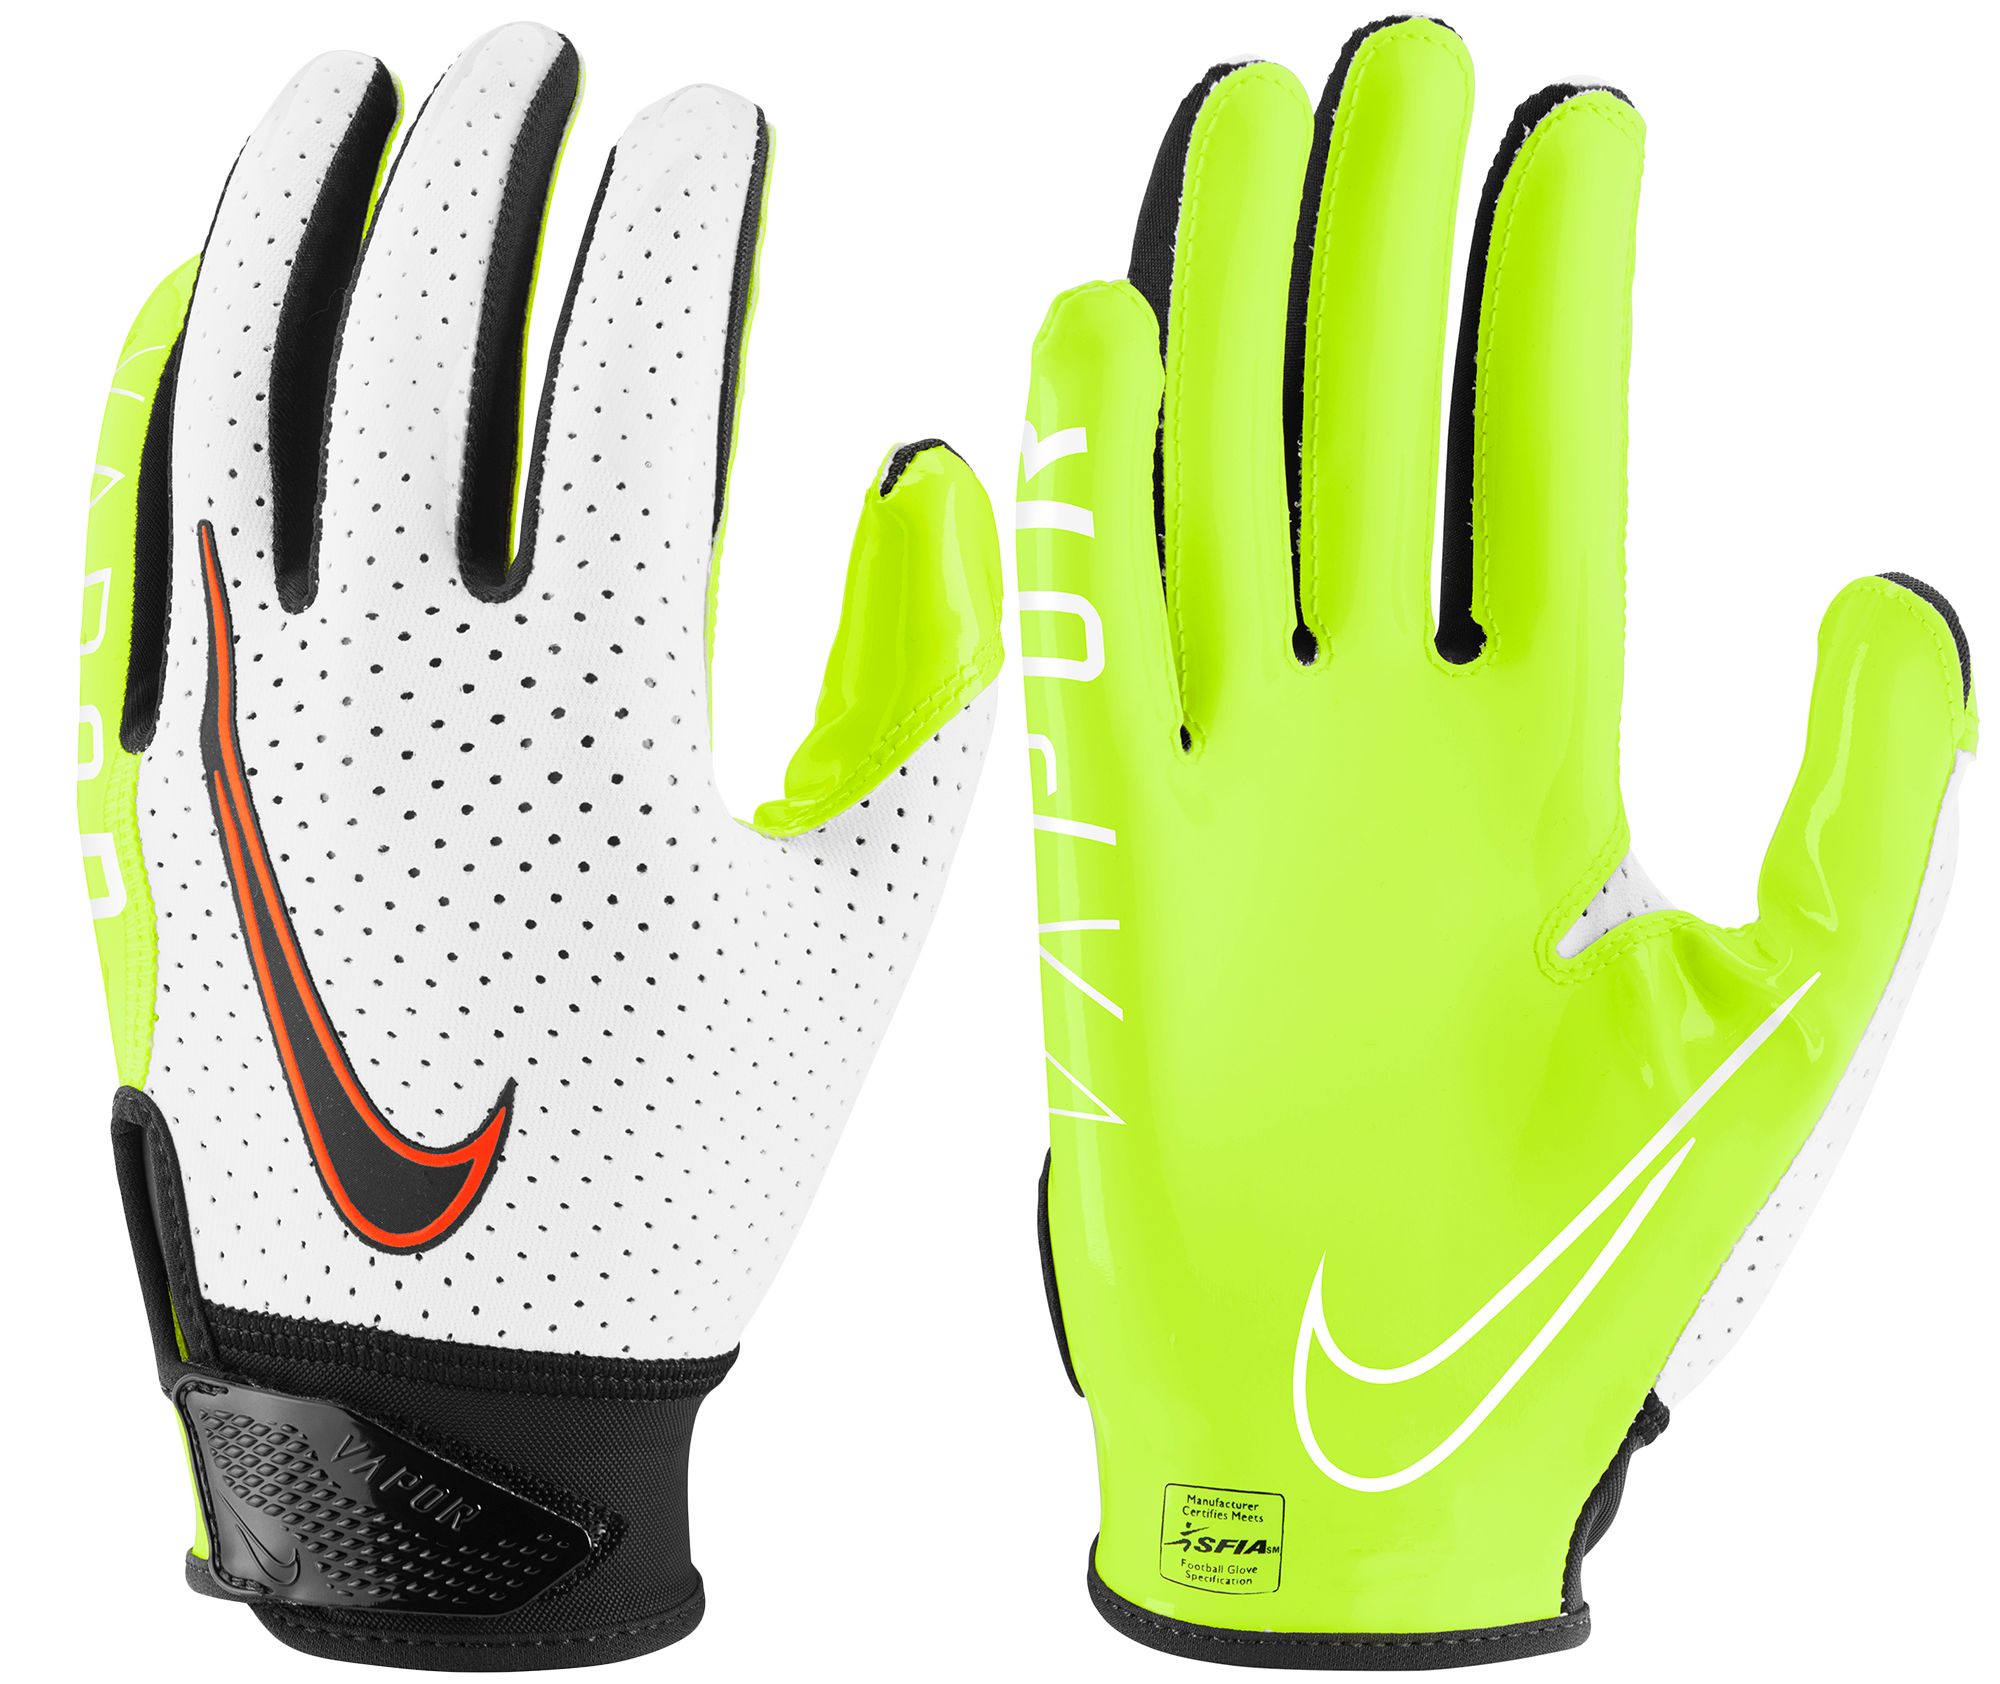 Nike Vapor Jet 6.0 Football Receiver Gloves